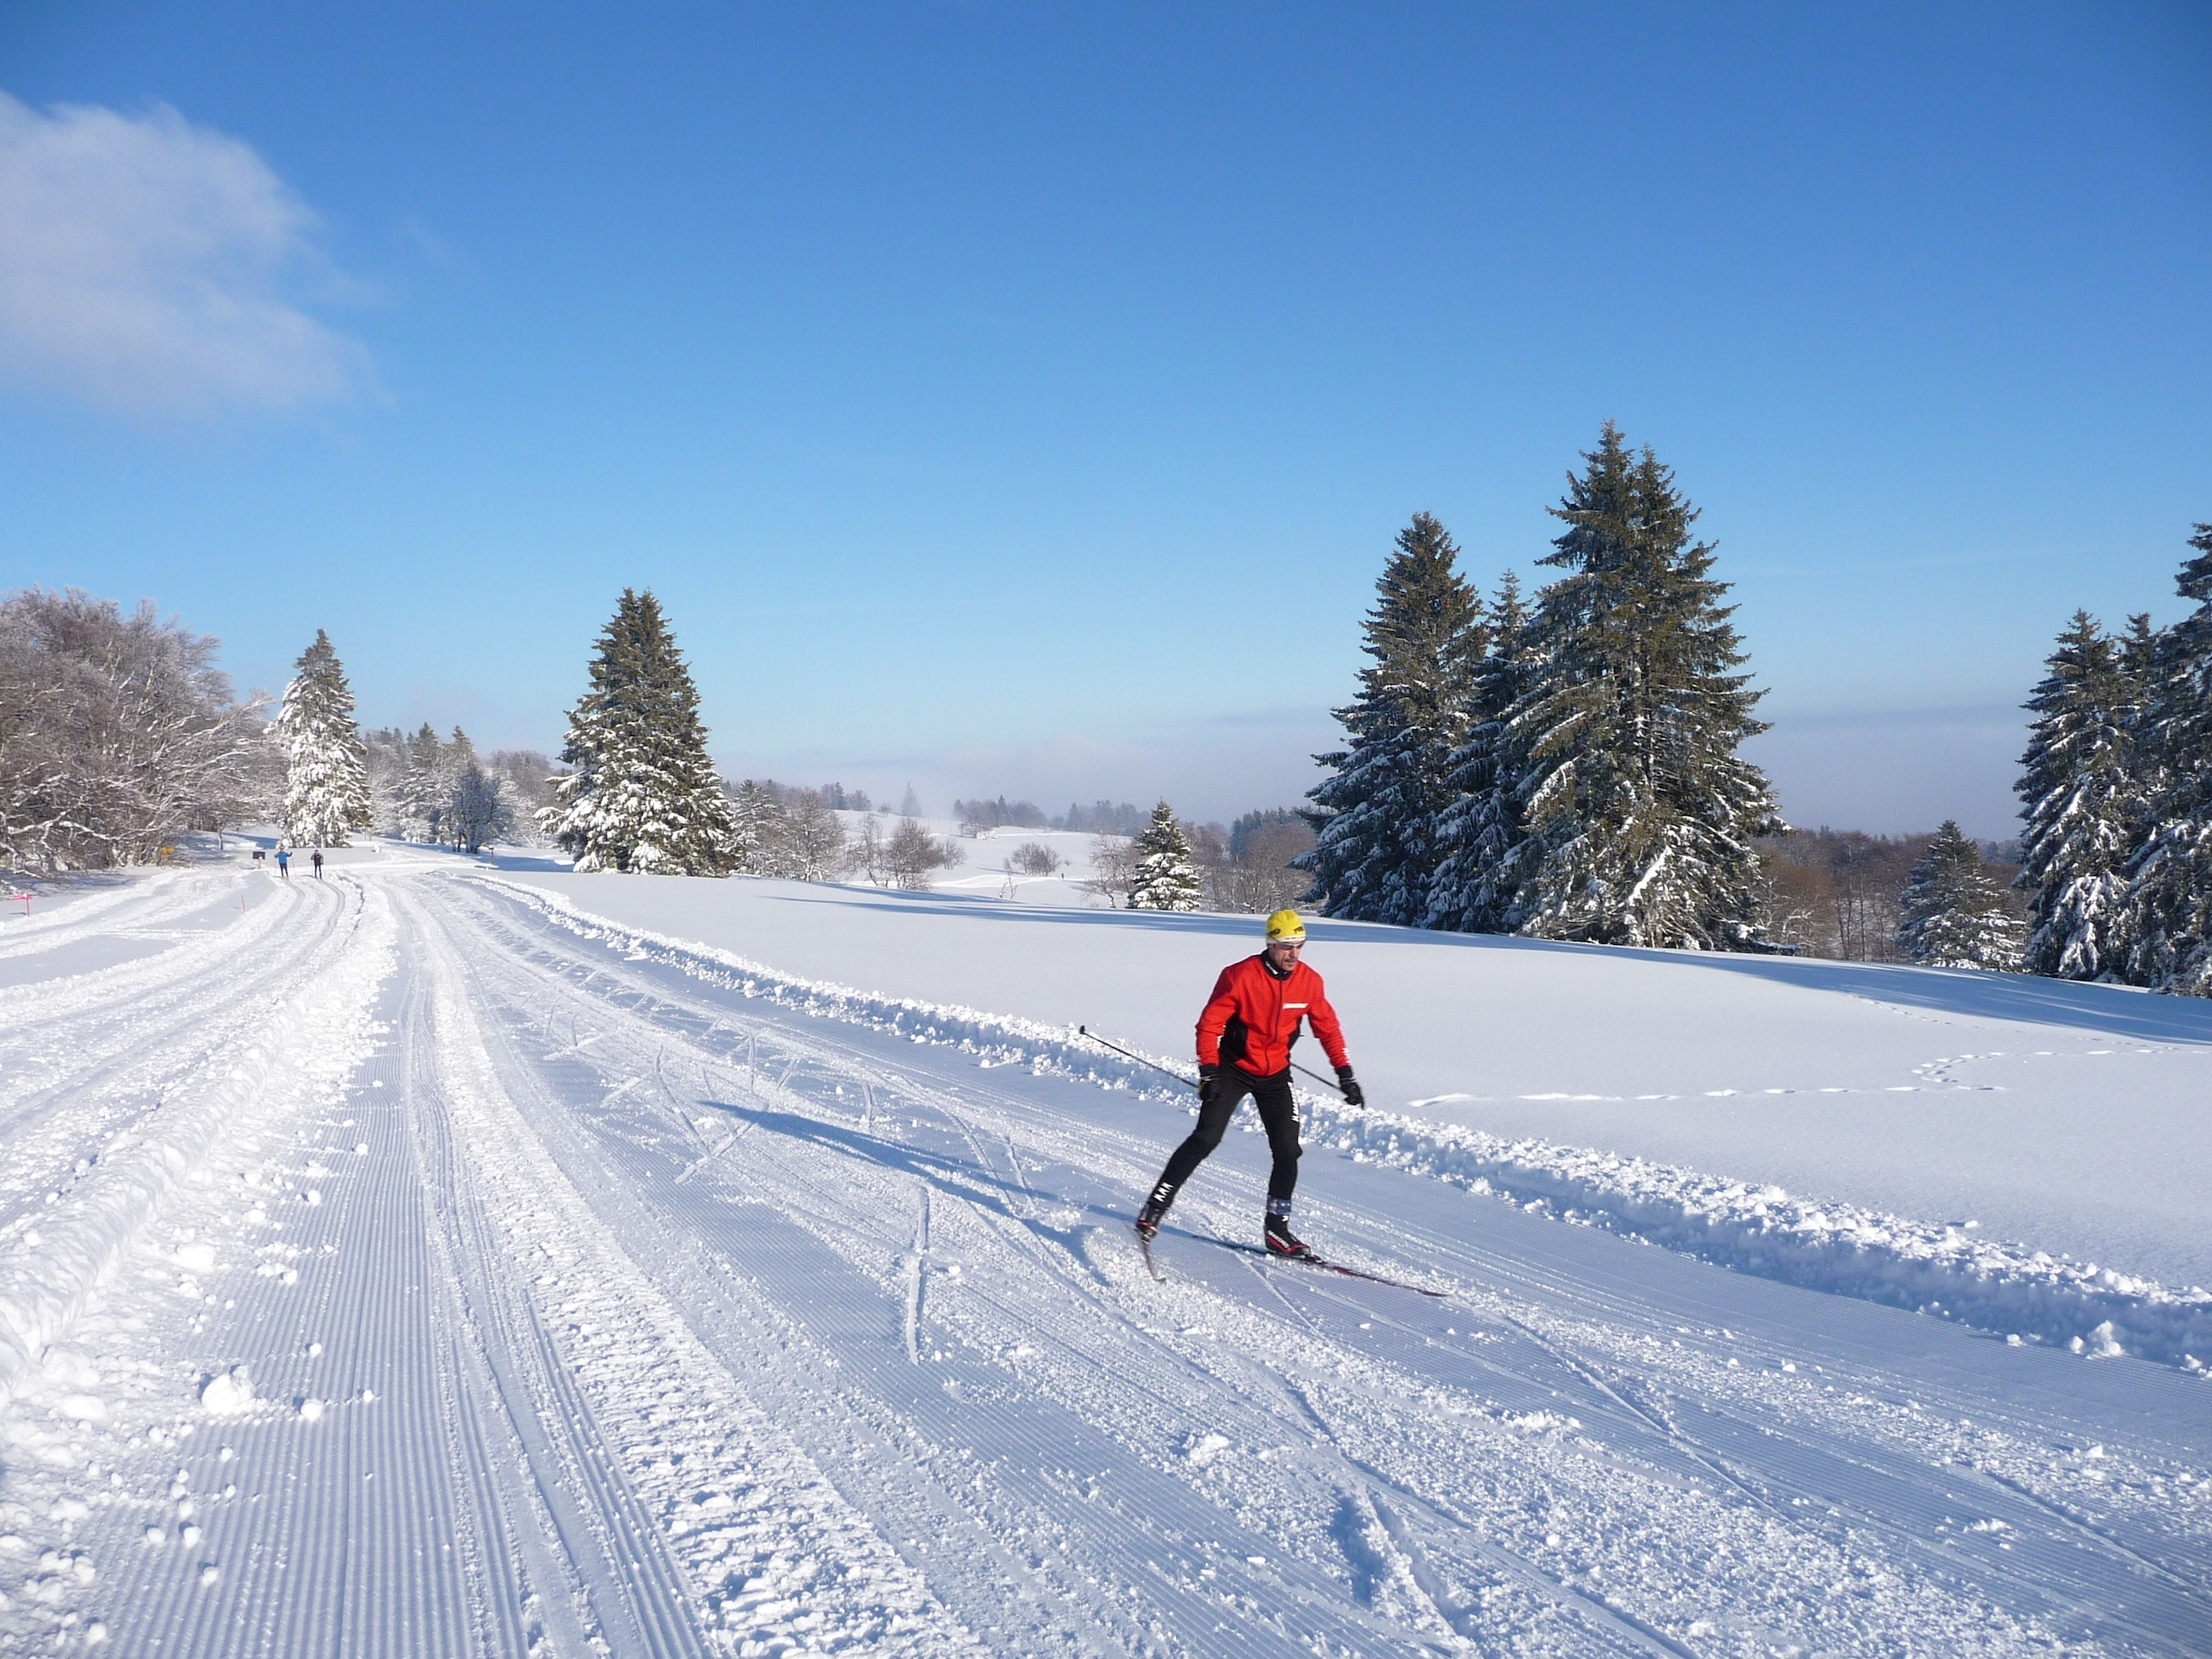 Участки лыжник. Лыжня "Левковская гора". Трасса для лыж. Лыжи на лыжне. Зимняя Лыжня.